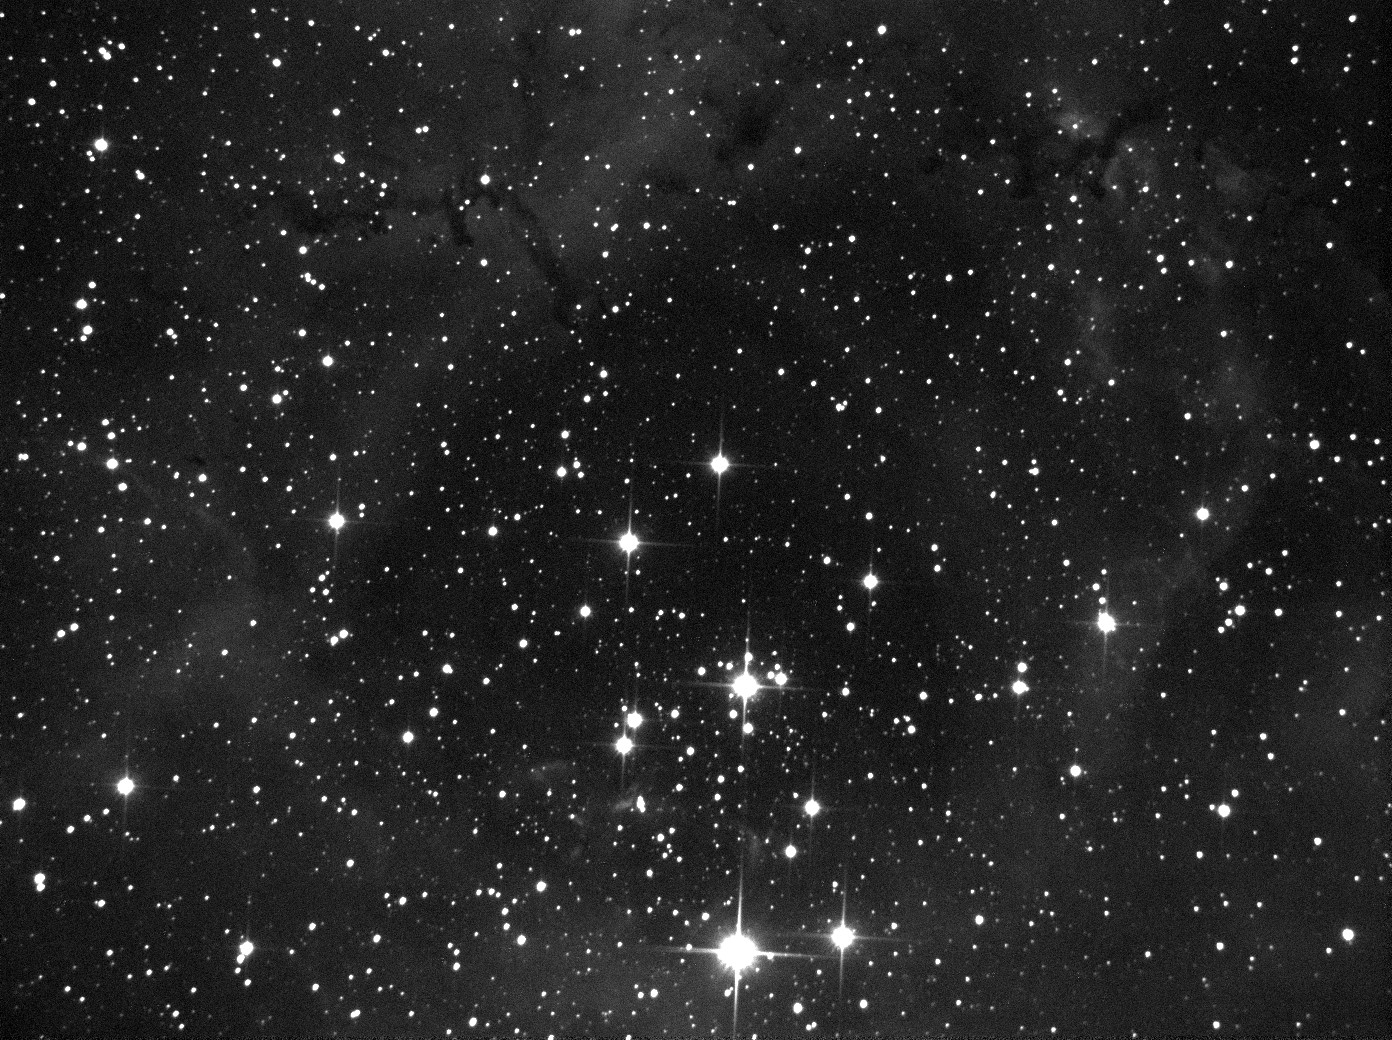 Rosette nebula NGC2238_7x50s.jpg